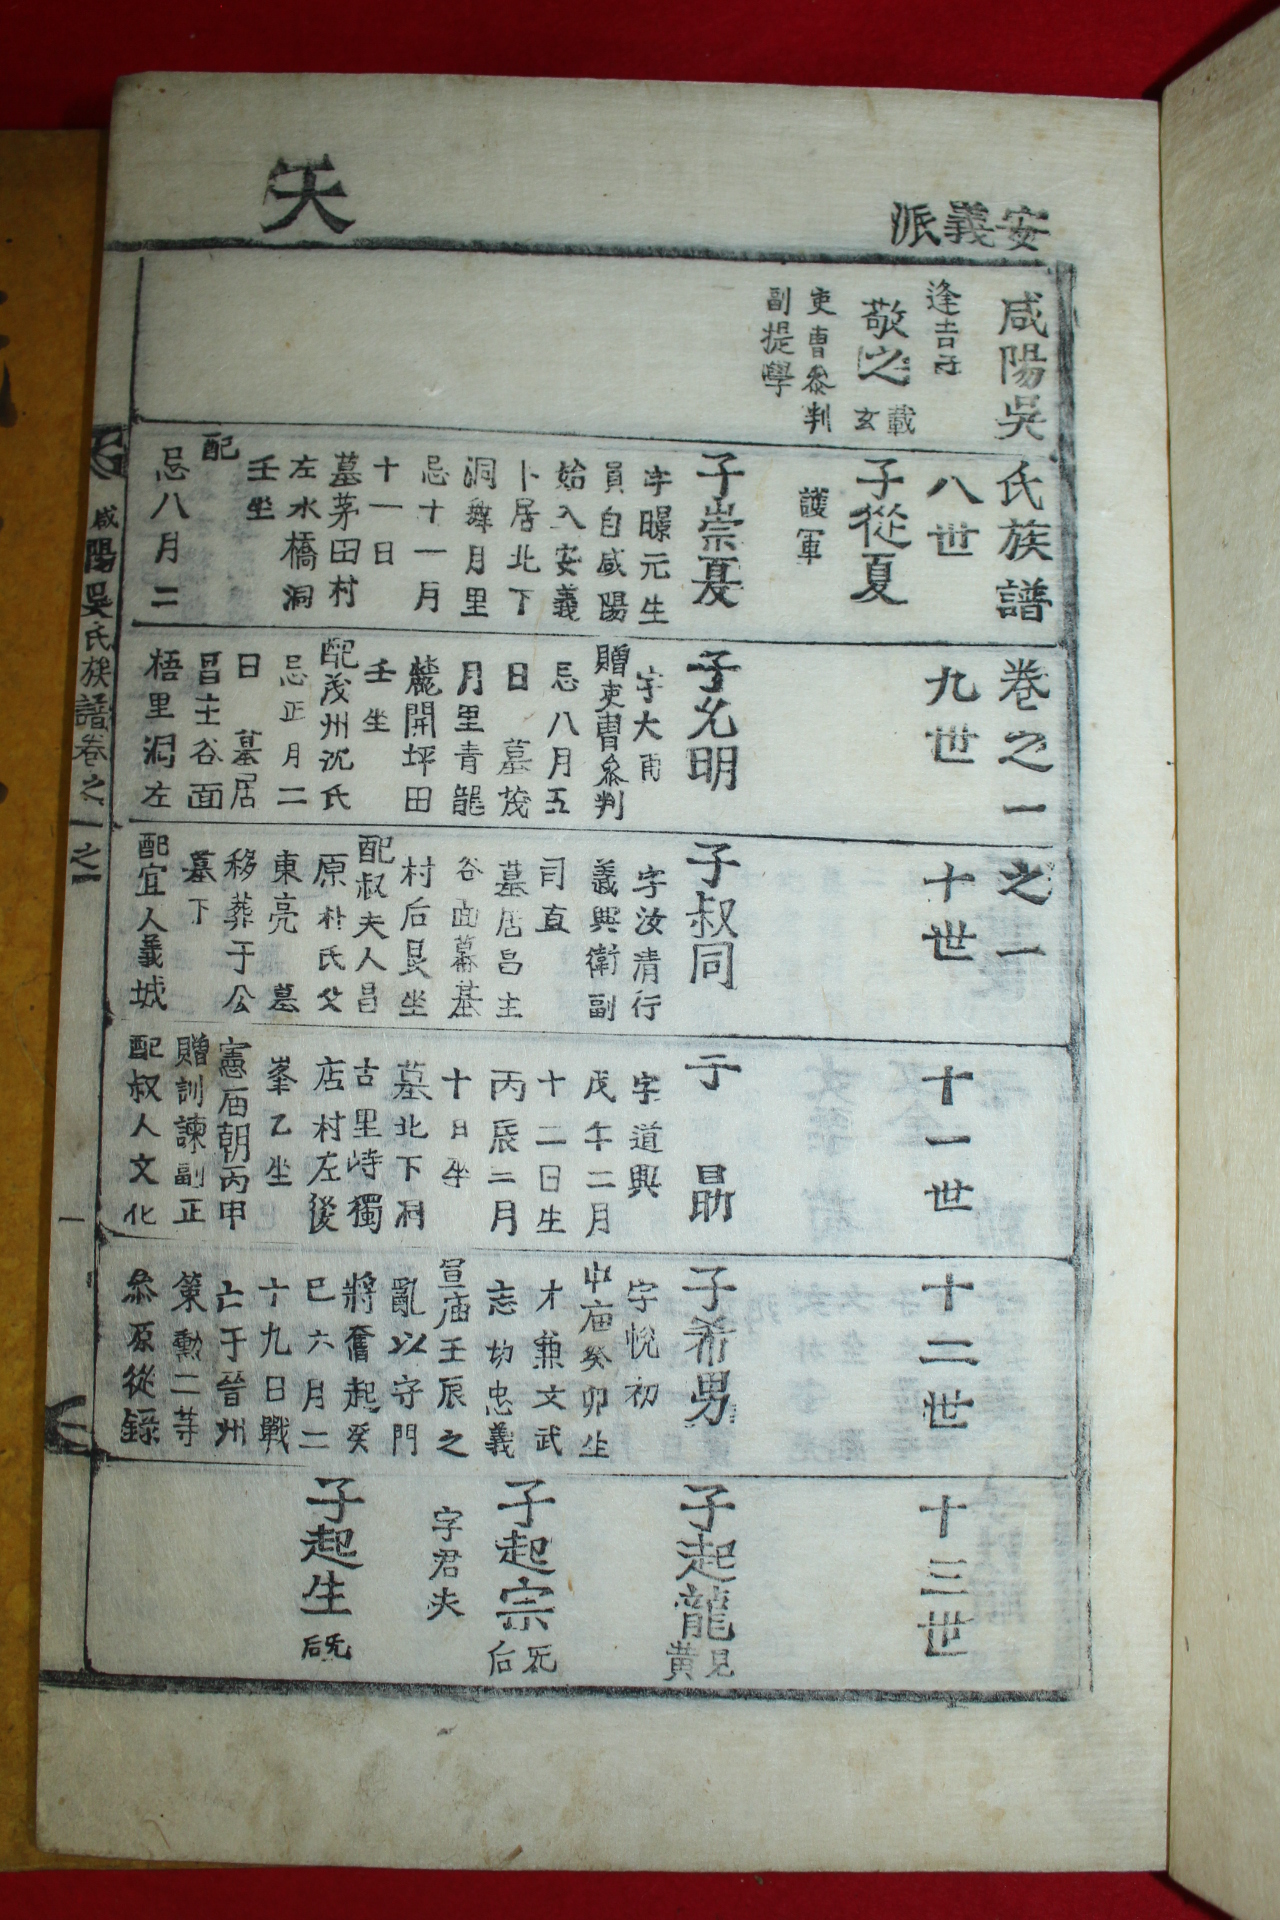 목활자본 함양오씨족보(咸陽吳氏族譜) 5책